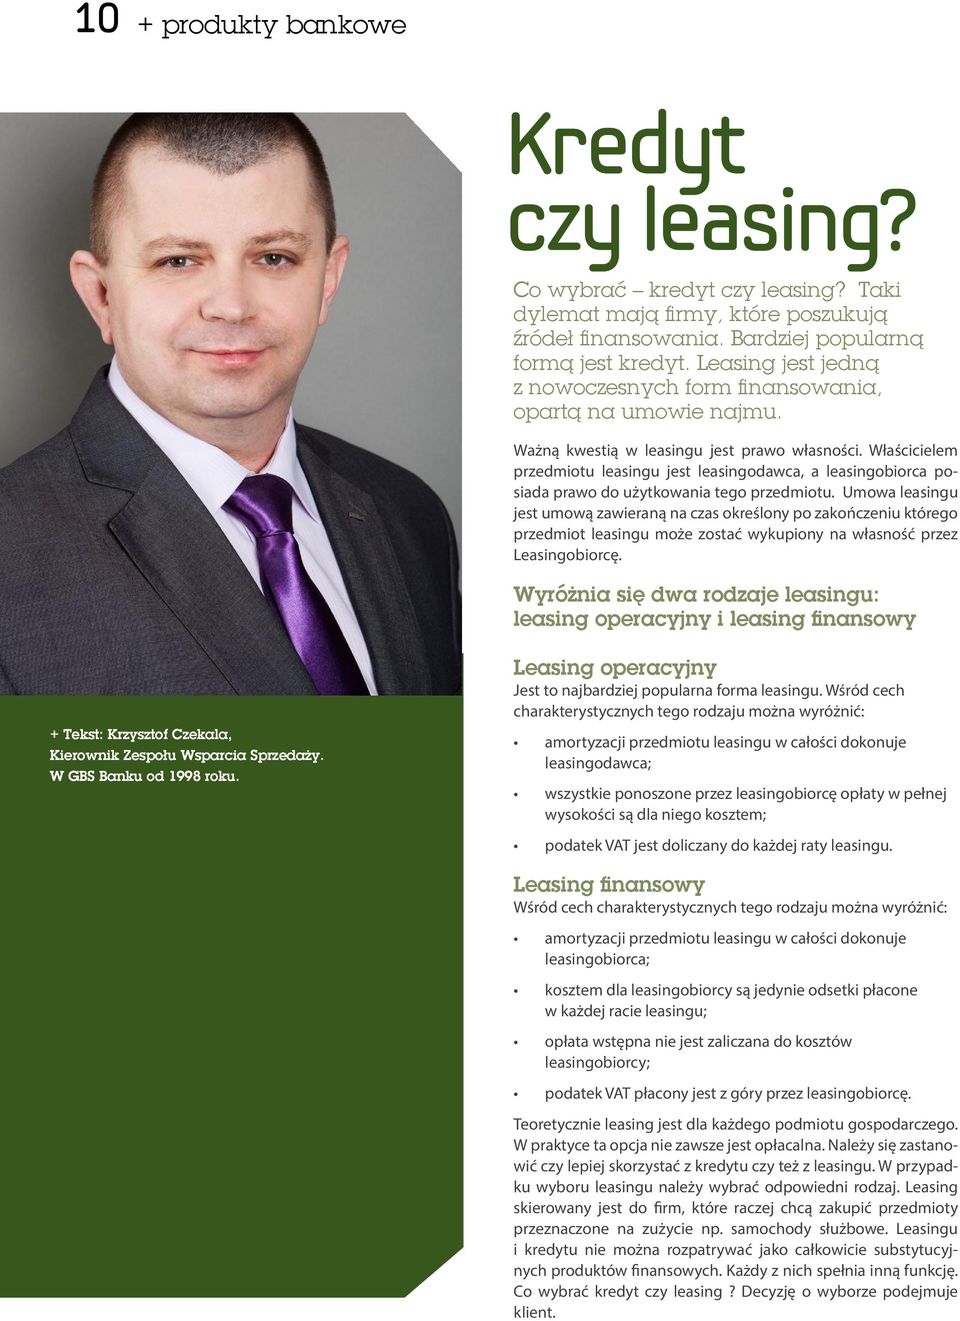 Właścicielem przedmiotu leasingu jest leasingodawca, a leasingobiorca posiada prawo do użytkowania tego przedmiotu.